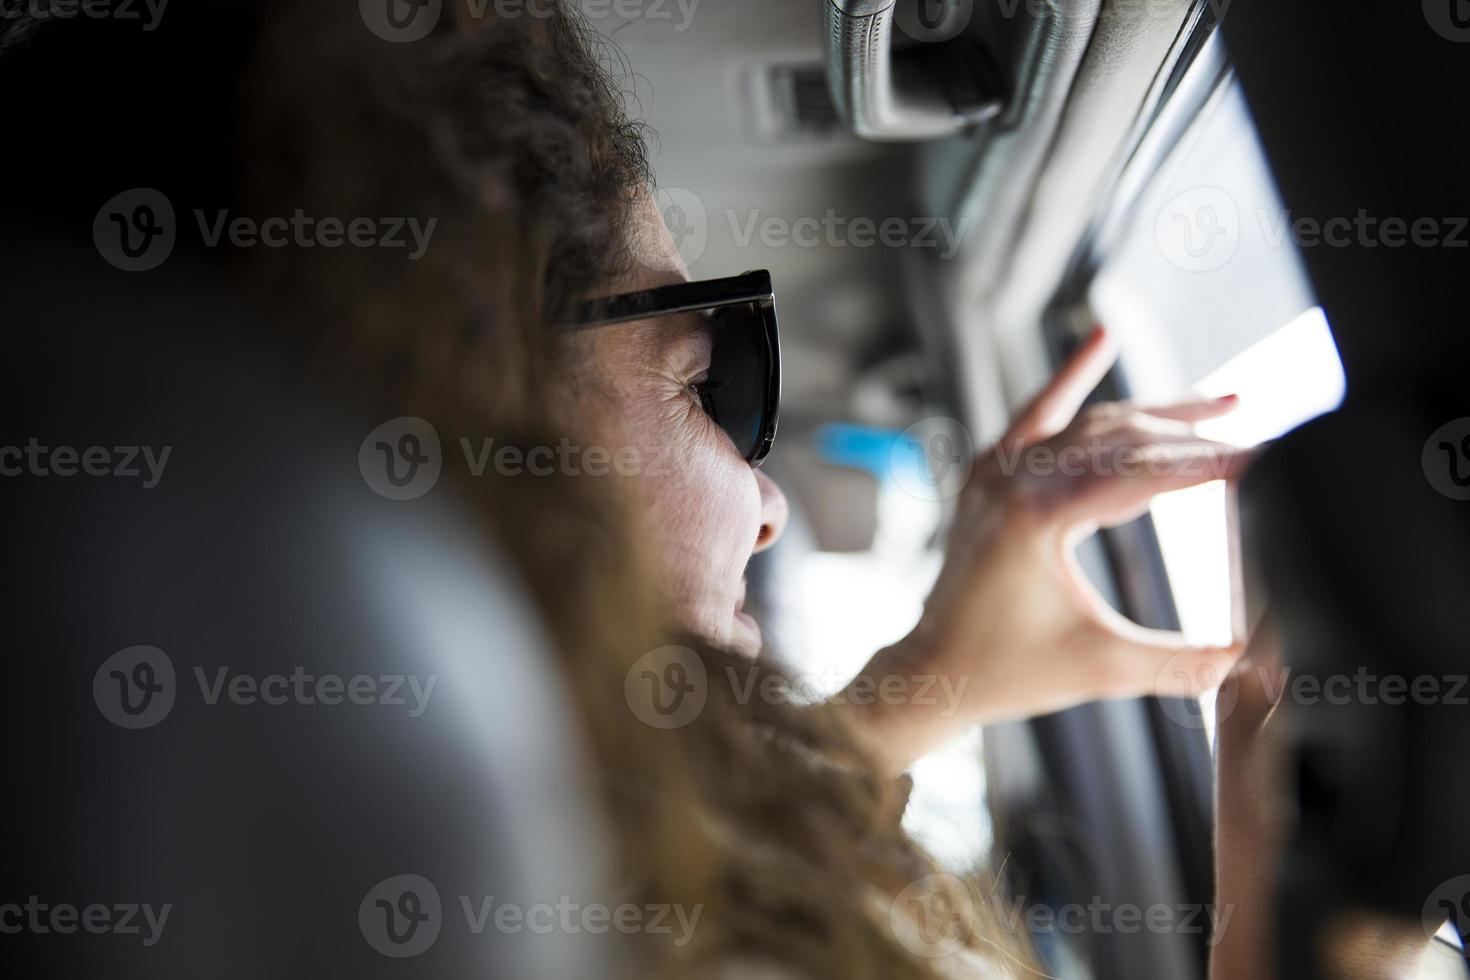 giovane donna che scatta una foto con il telefono cellulare dall'interno di un veicolo durante un viaggio